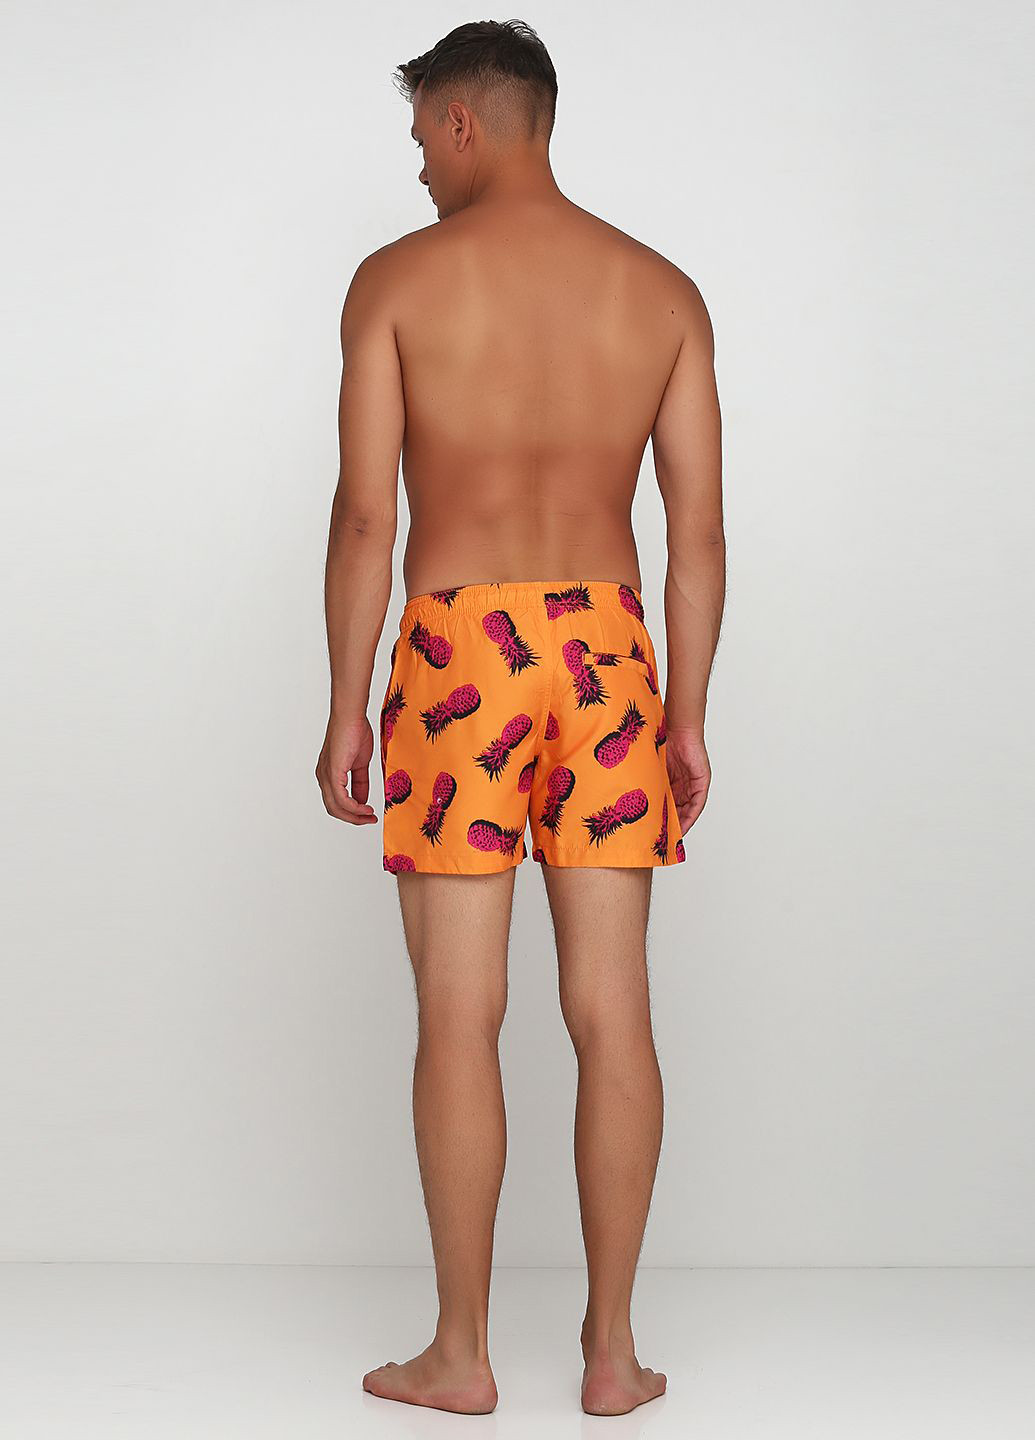 Шорти H&M малюнки помаранчеві пляжні поліестер